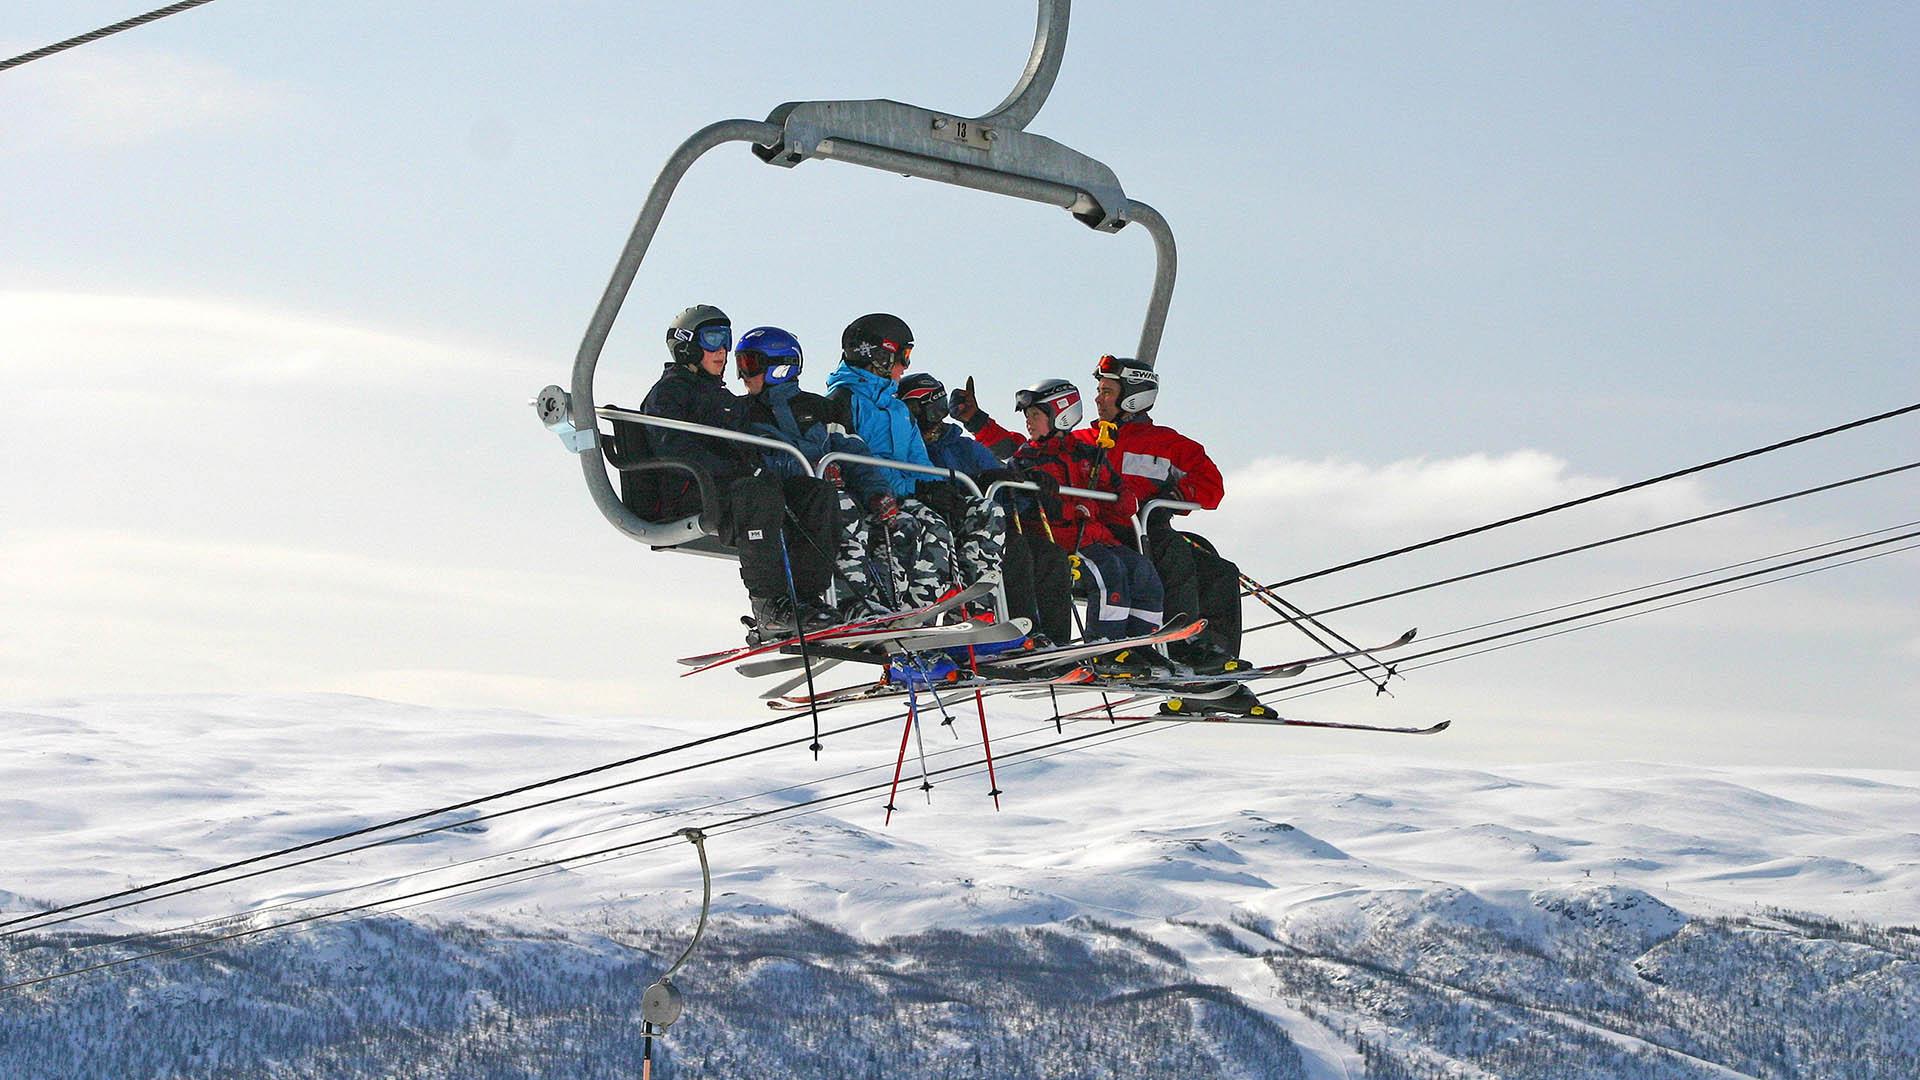 Folk i skiheisen på Beitostølen